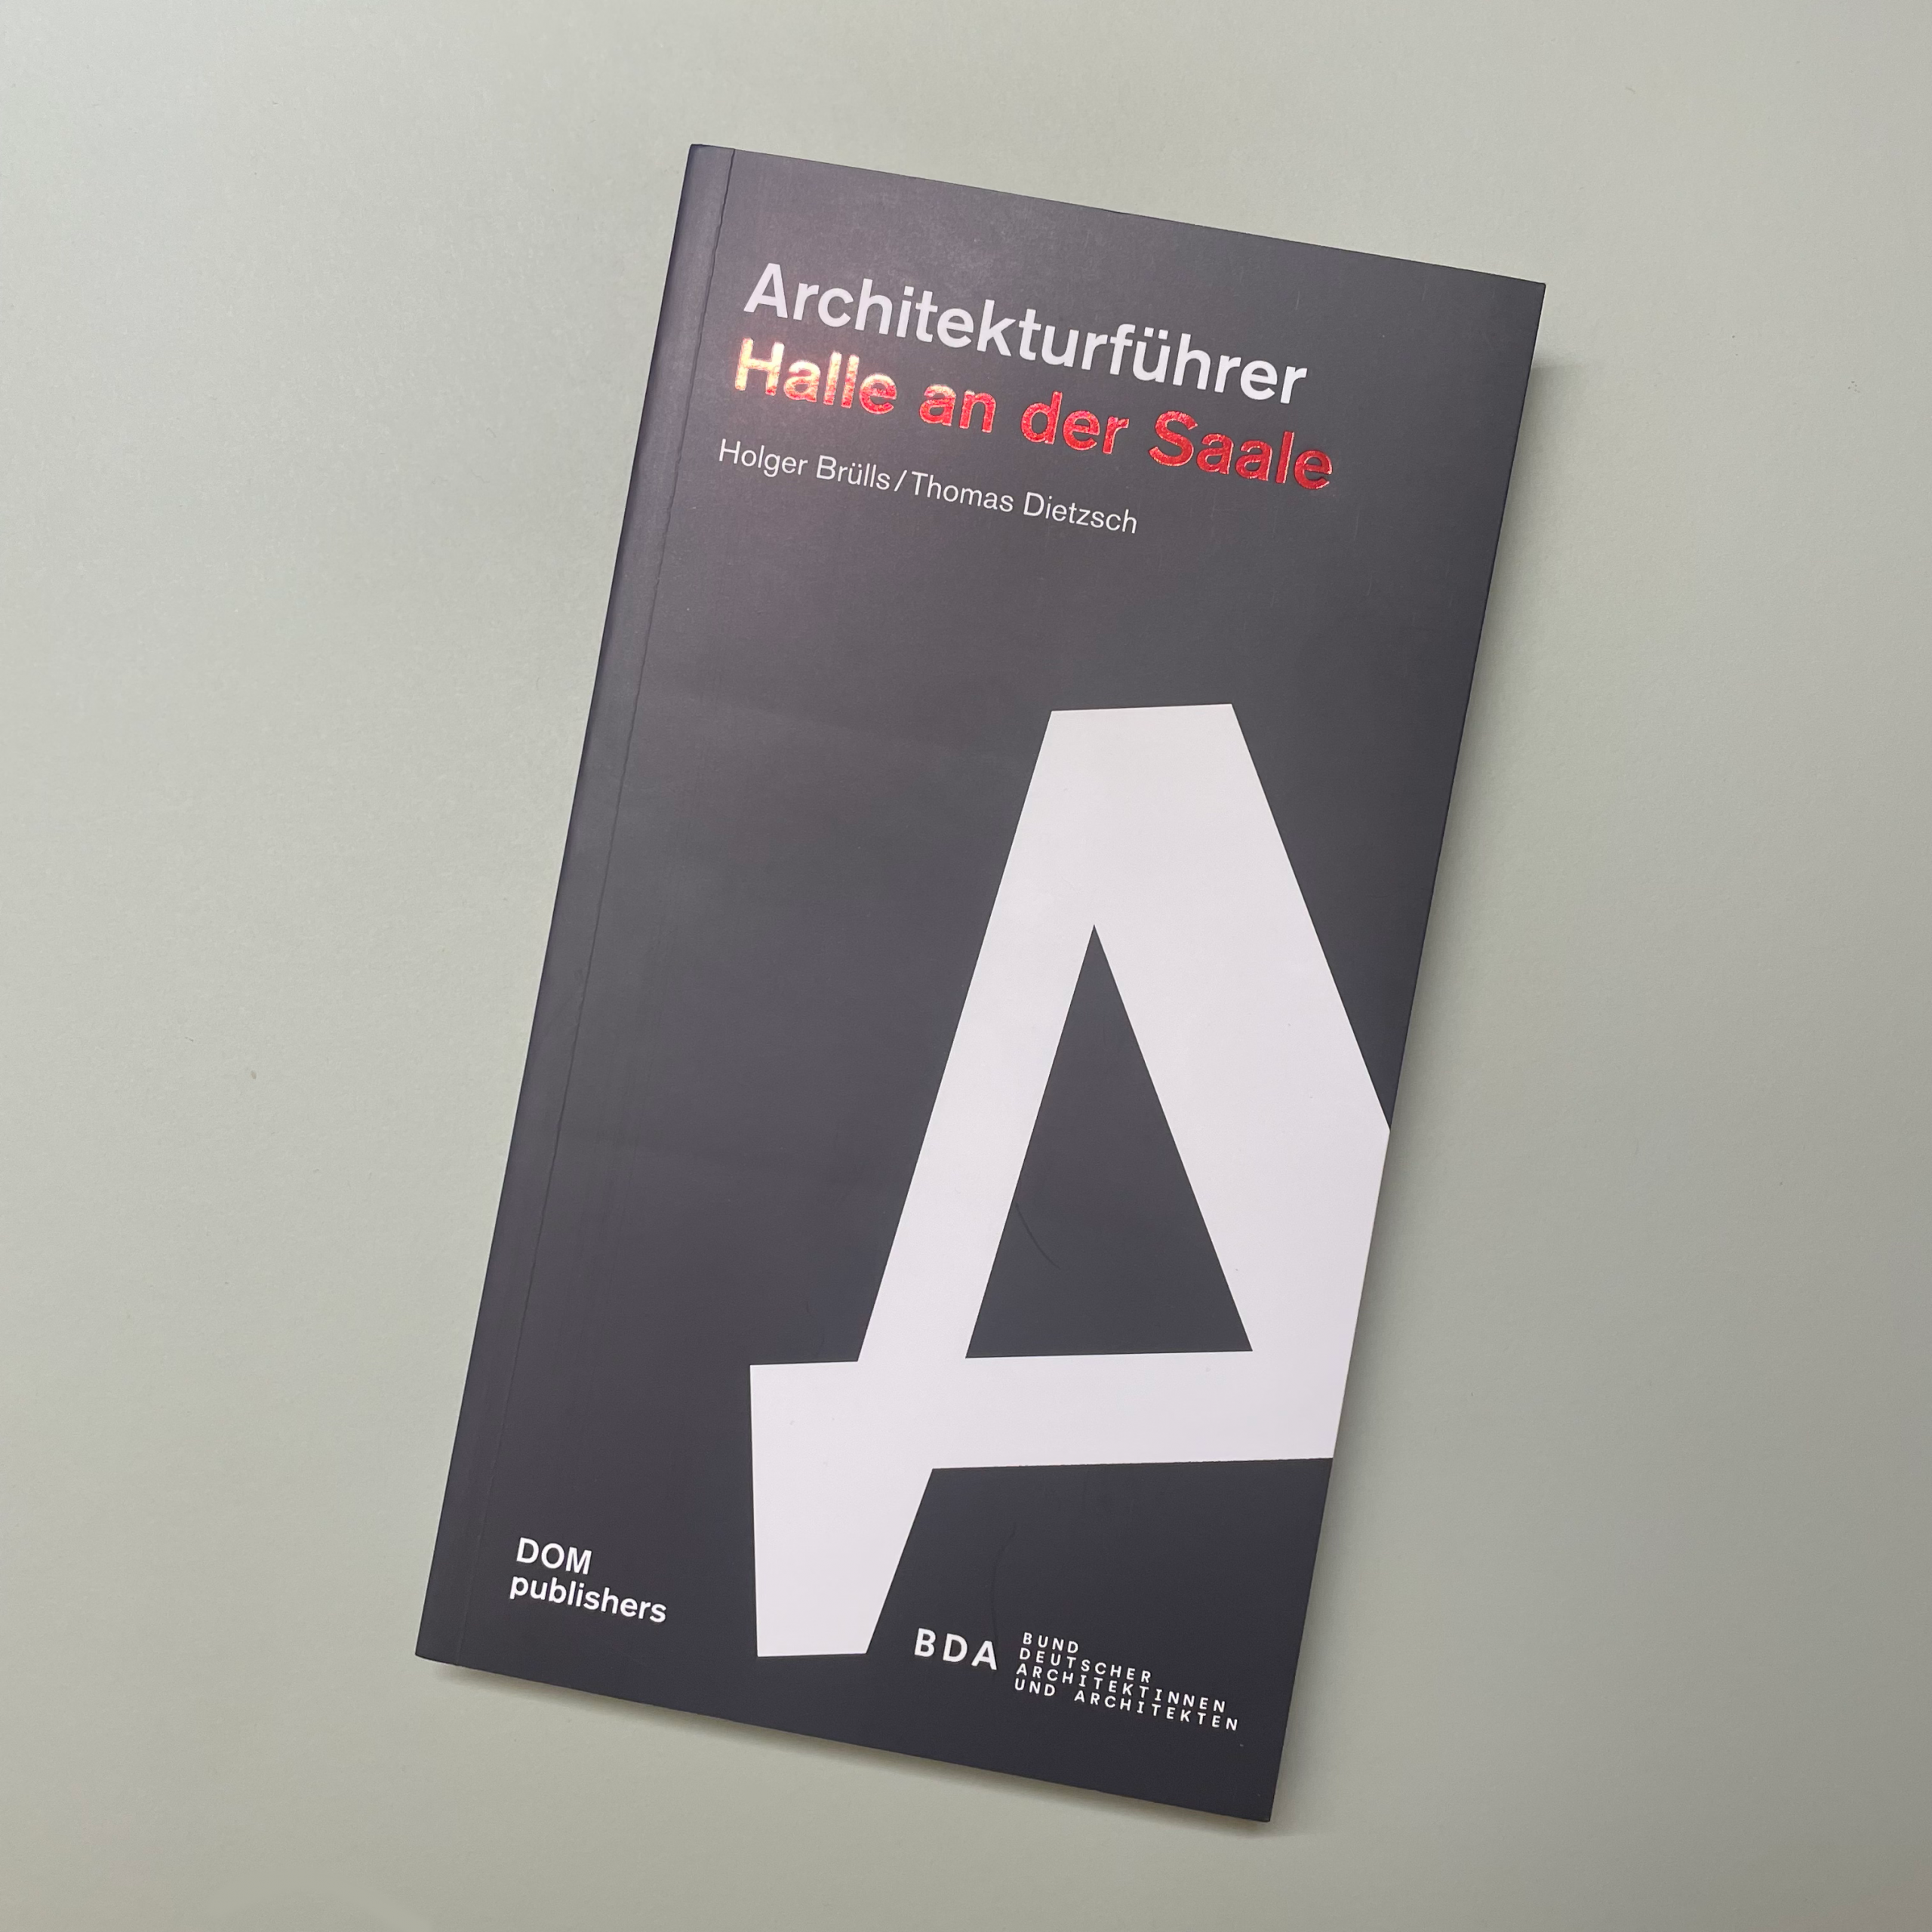 Buch "Architekturführer Halle an der Saale" vor grauem Hintergrund